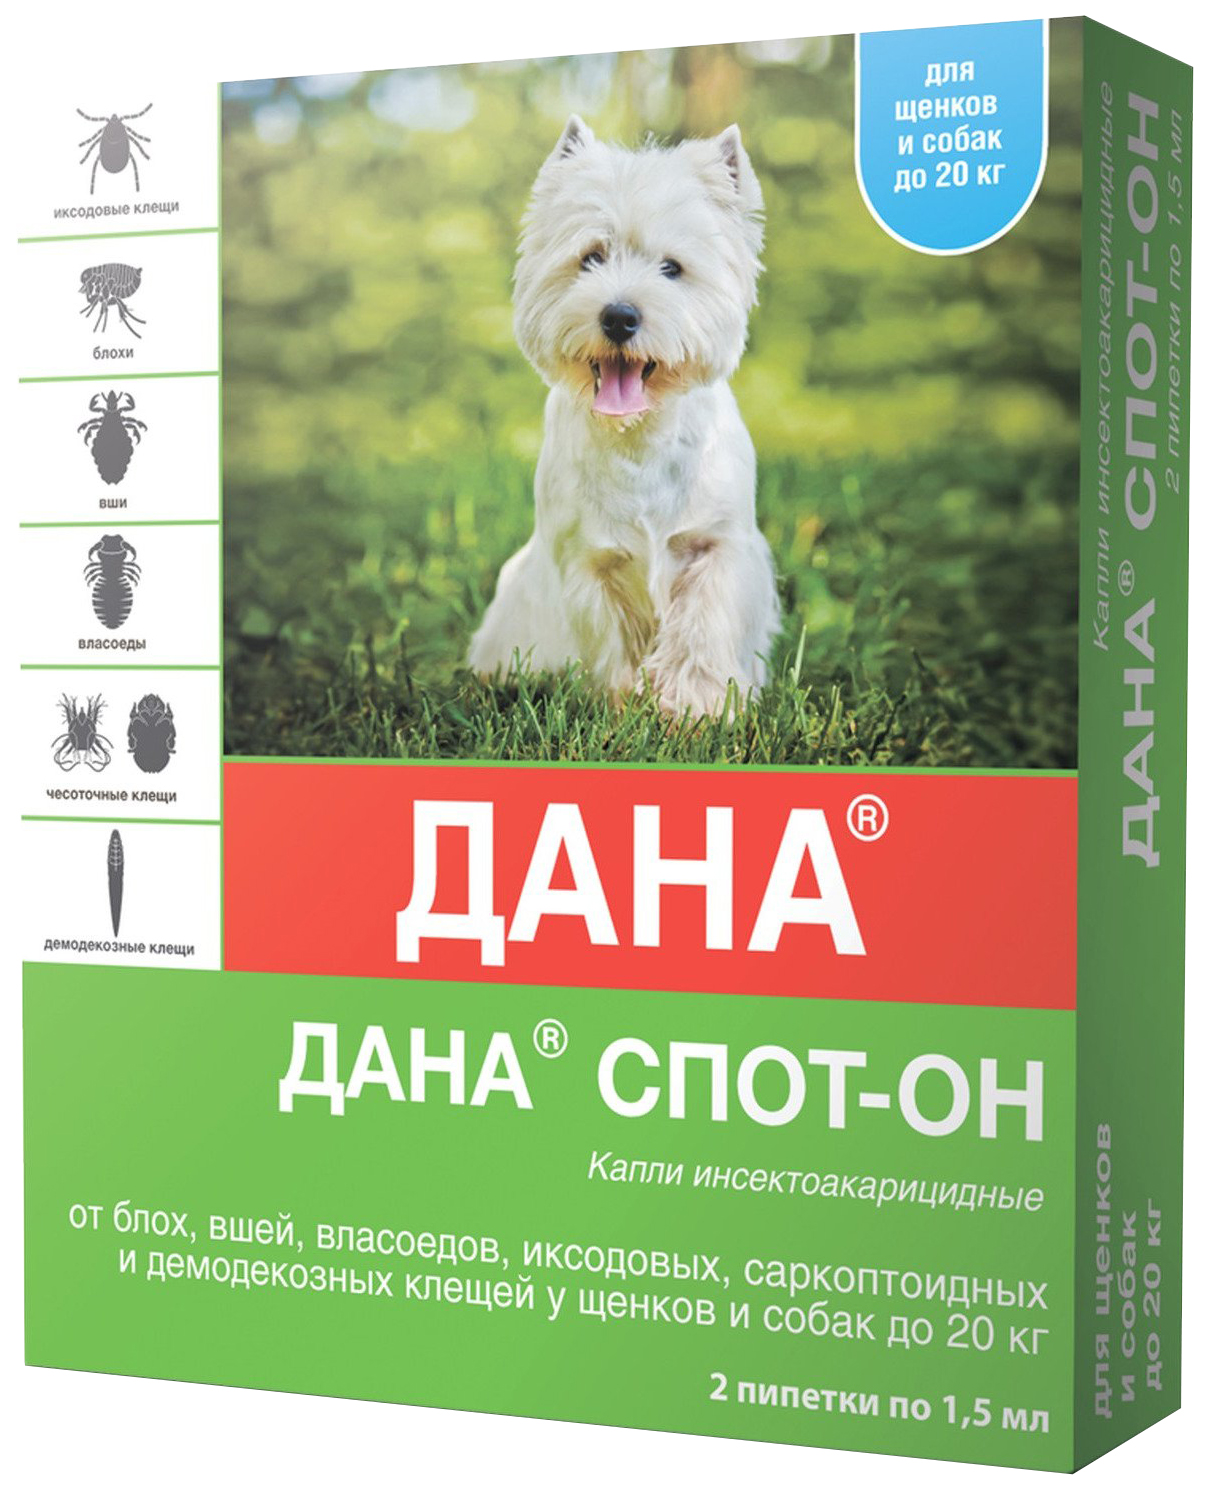 Капли инсектоакарицидные для щенков и собак apicenna Дана Спот-Он, до 20 кг, 1,5 мл, 2 шт